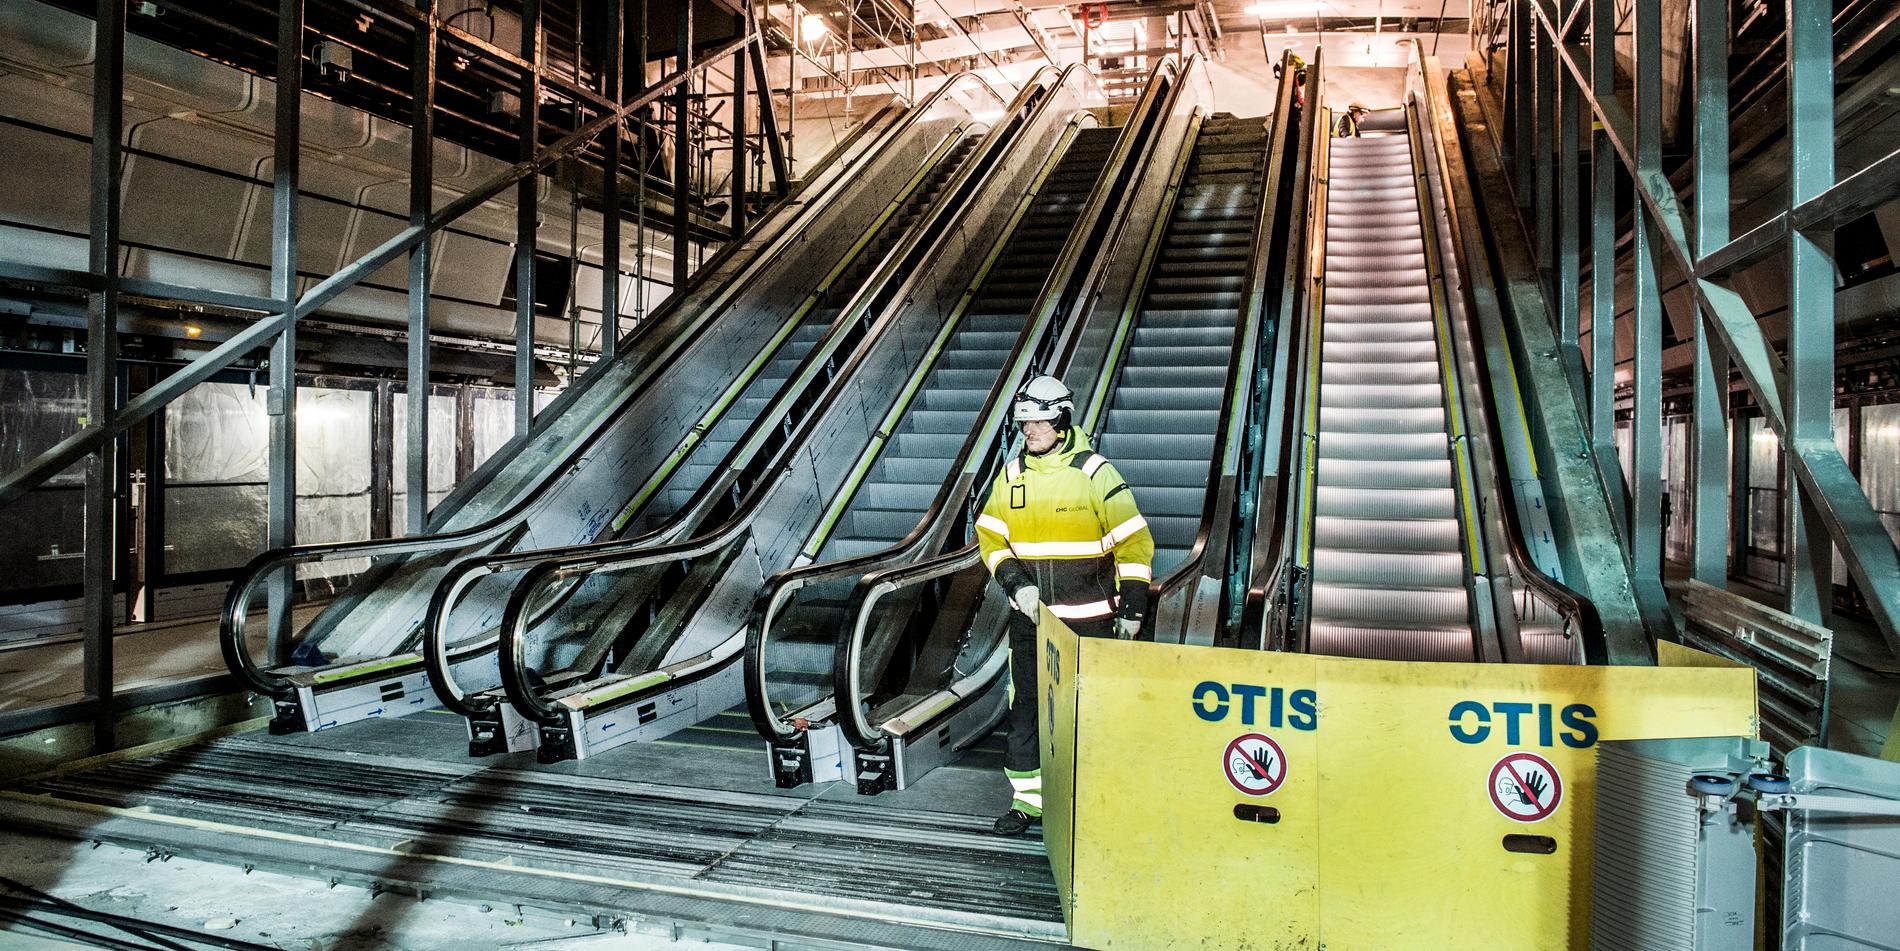 Några av de dussintals rulltrapporna i Citybanan som nu gjort att stationer stängts av säkerhetsskäl. 